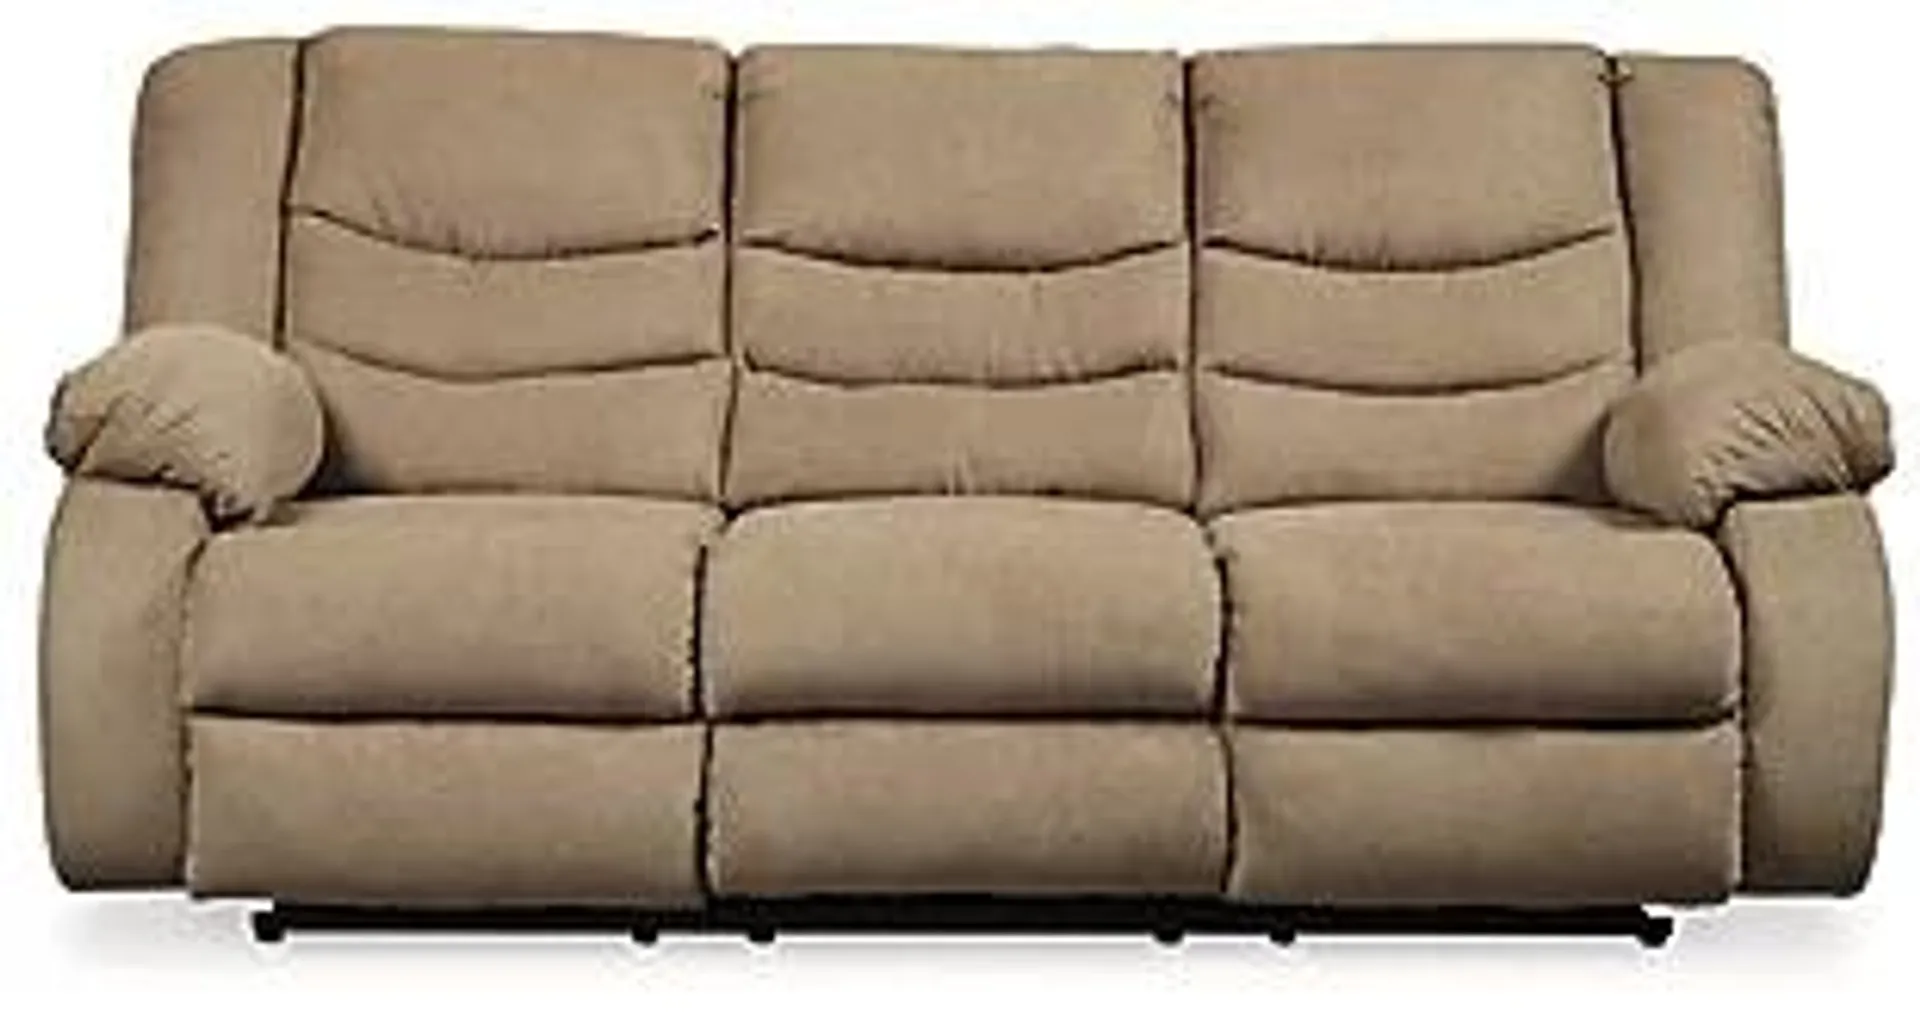 Tulen Manual Reclining Sofa